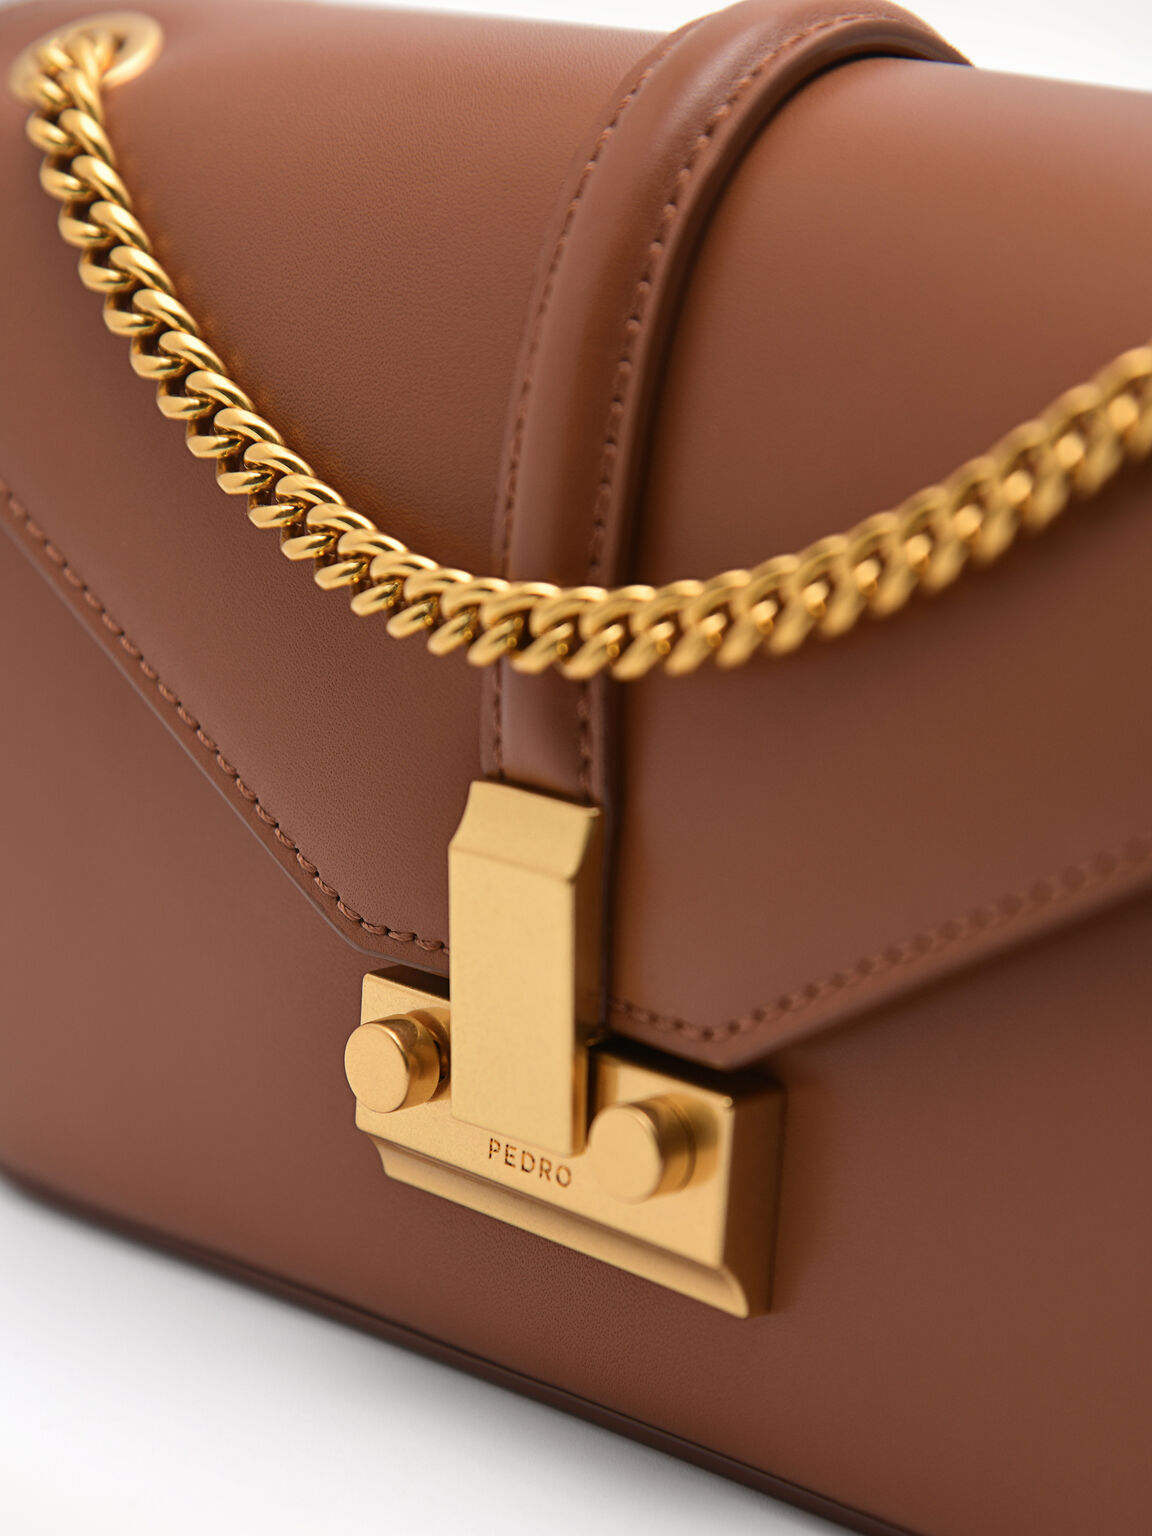 PEDRO Studio Francoise Leather Shoulder Bag, Camel